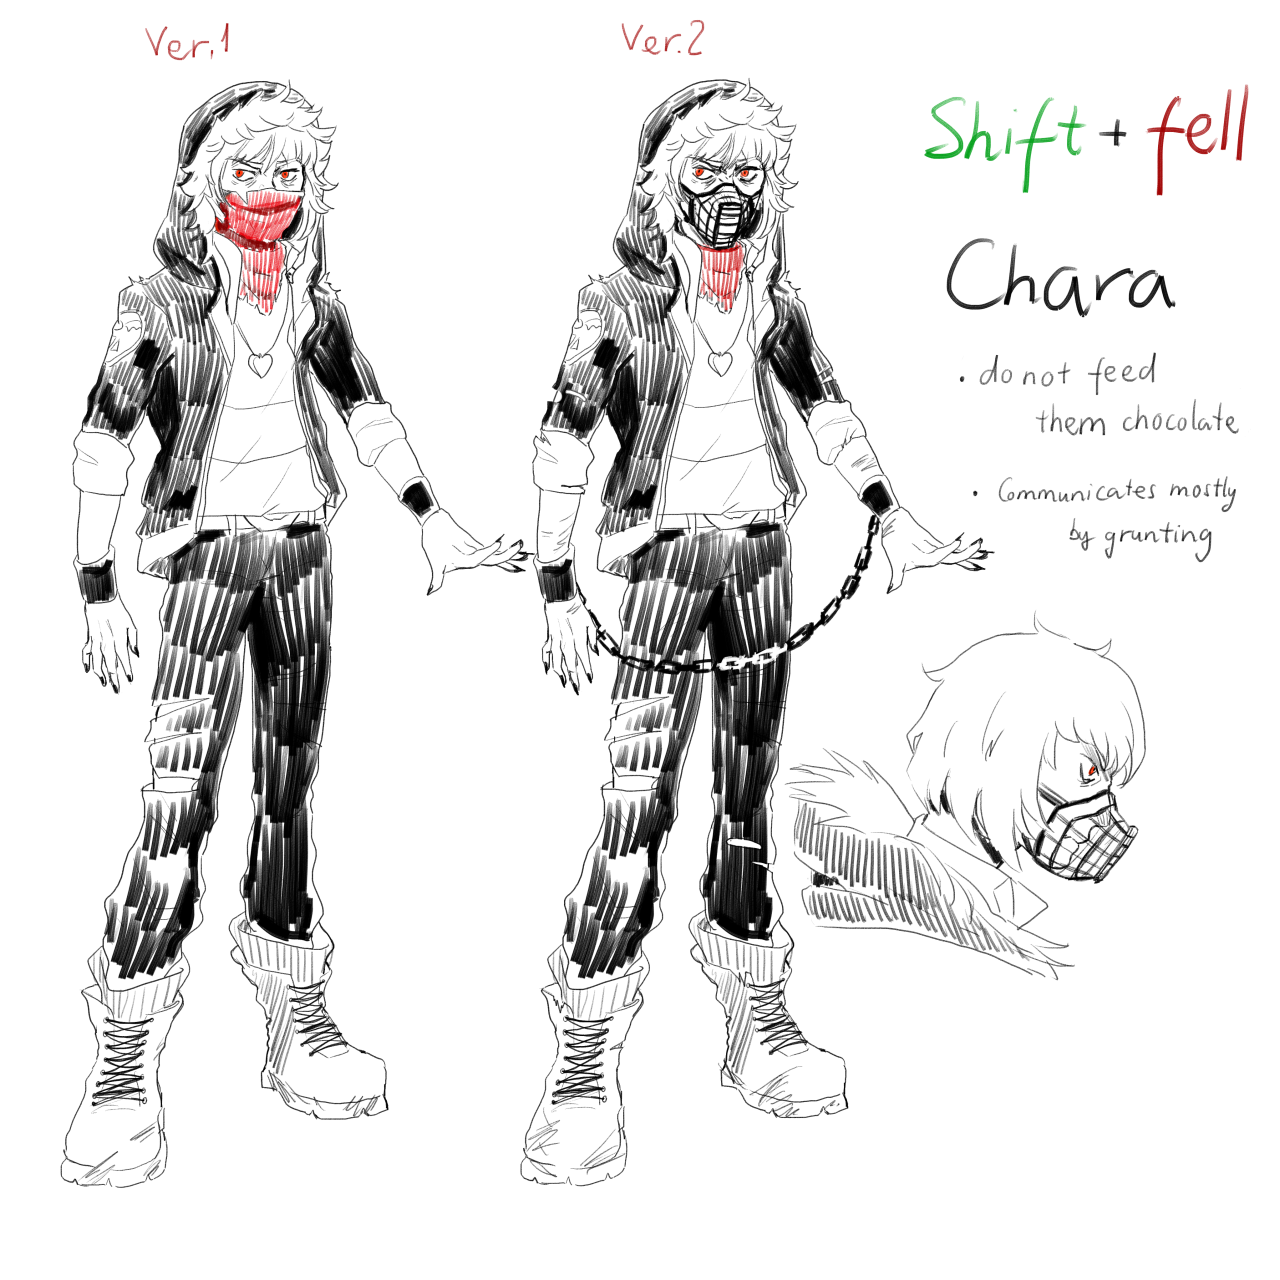 Bildergebnis für Shiftfell chara